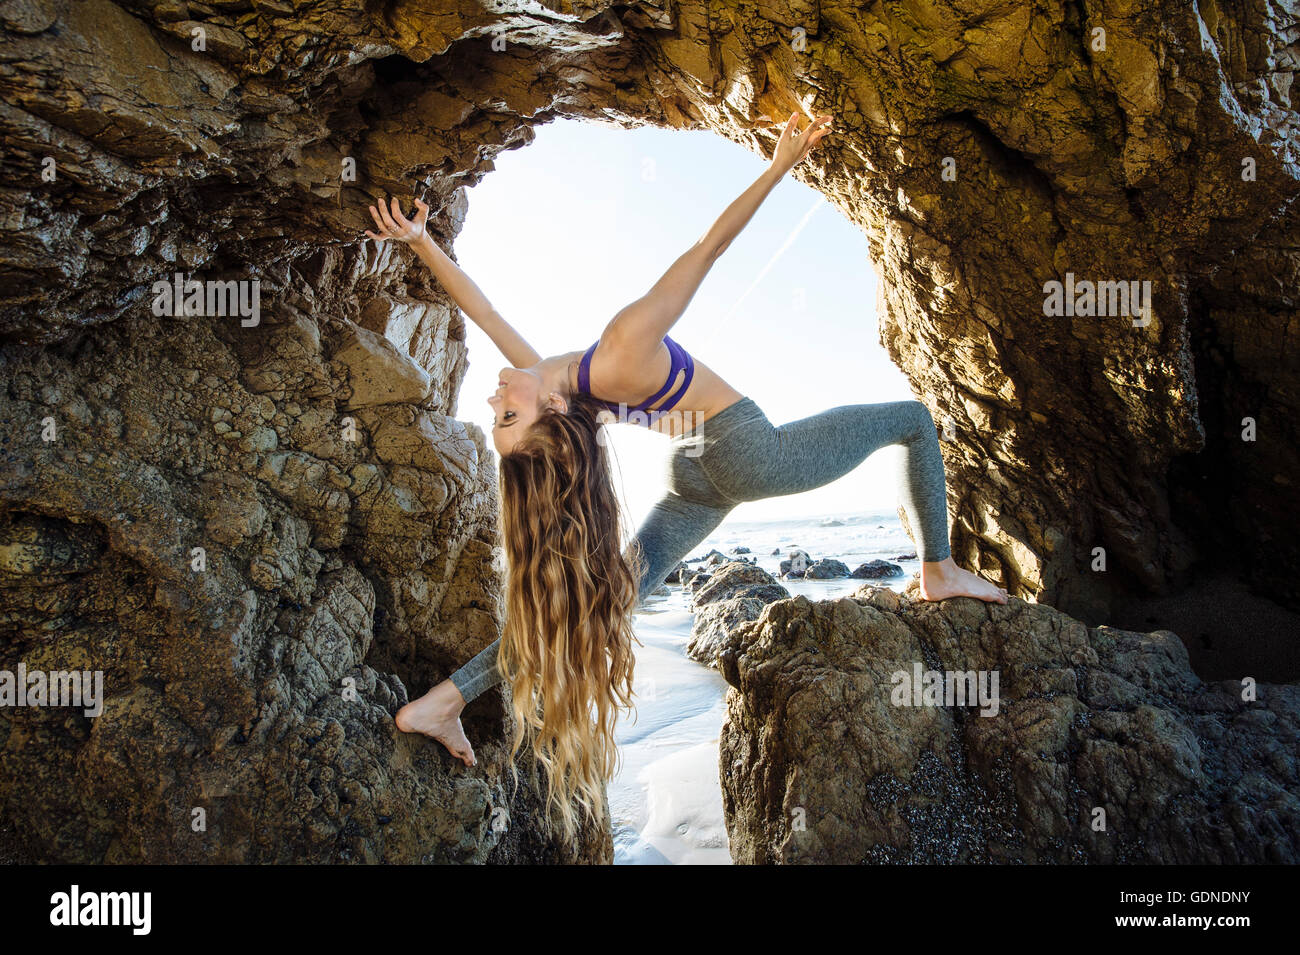 Jeune danseuse en équilibre dans la grotte de la mer de jeter ses longs cheveux en arrière, Los Angeles, Californie, USA Banque D'Images